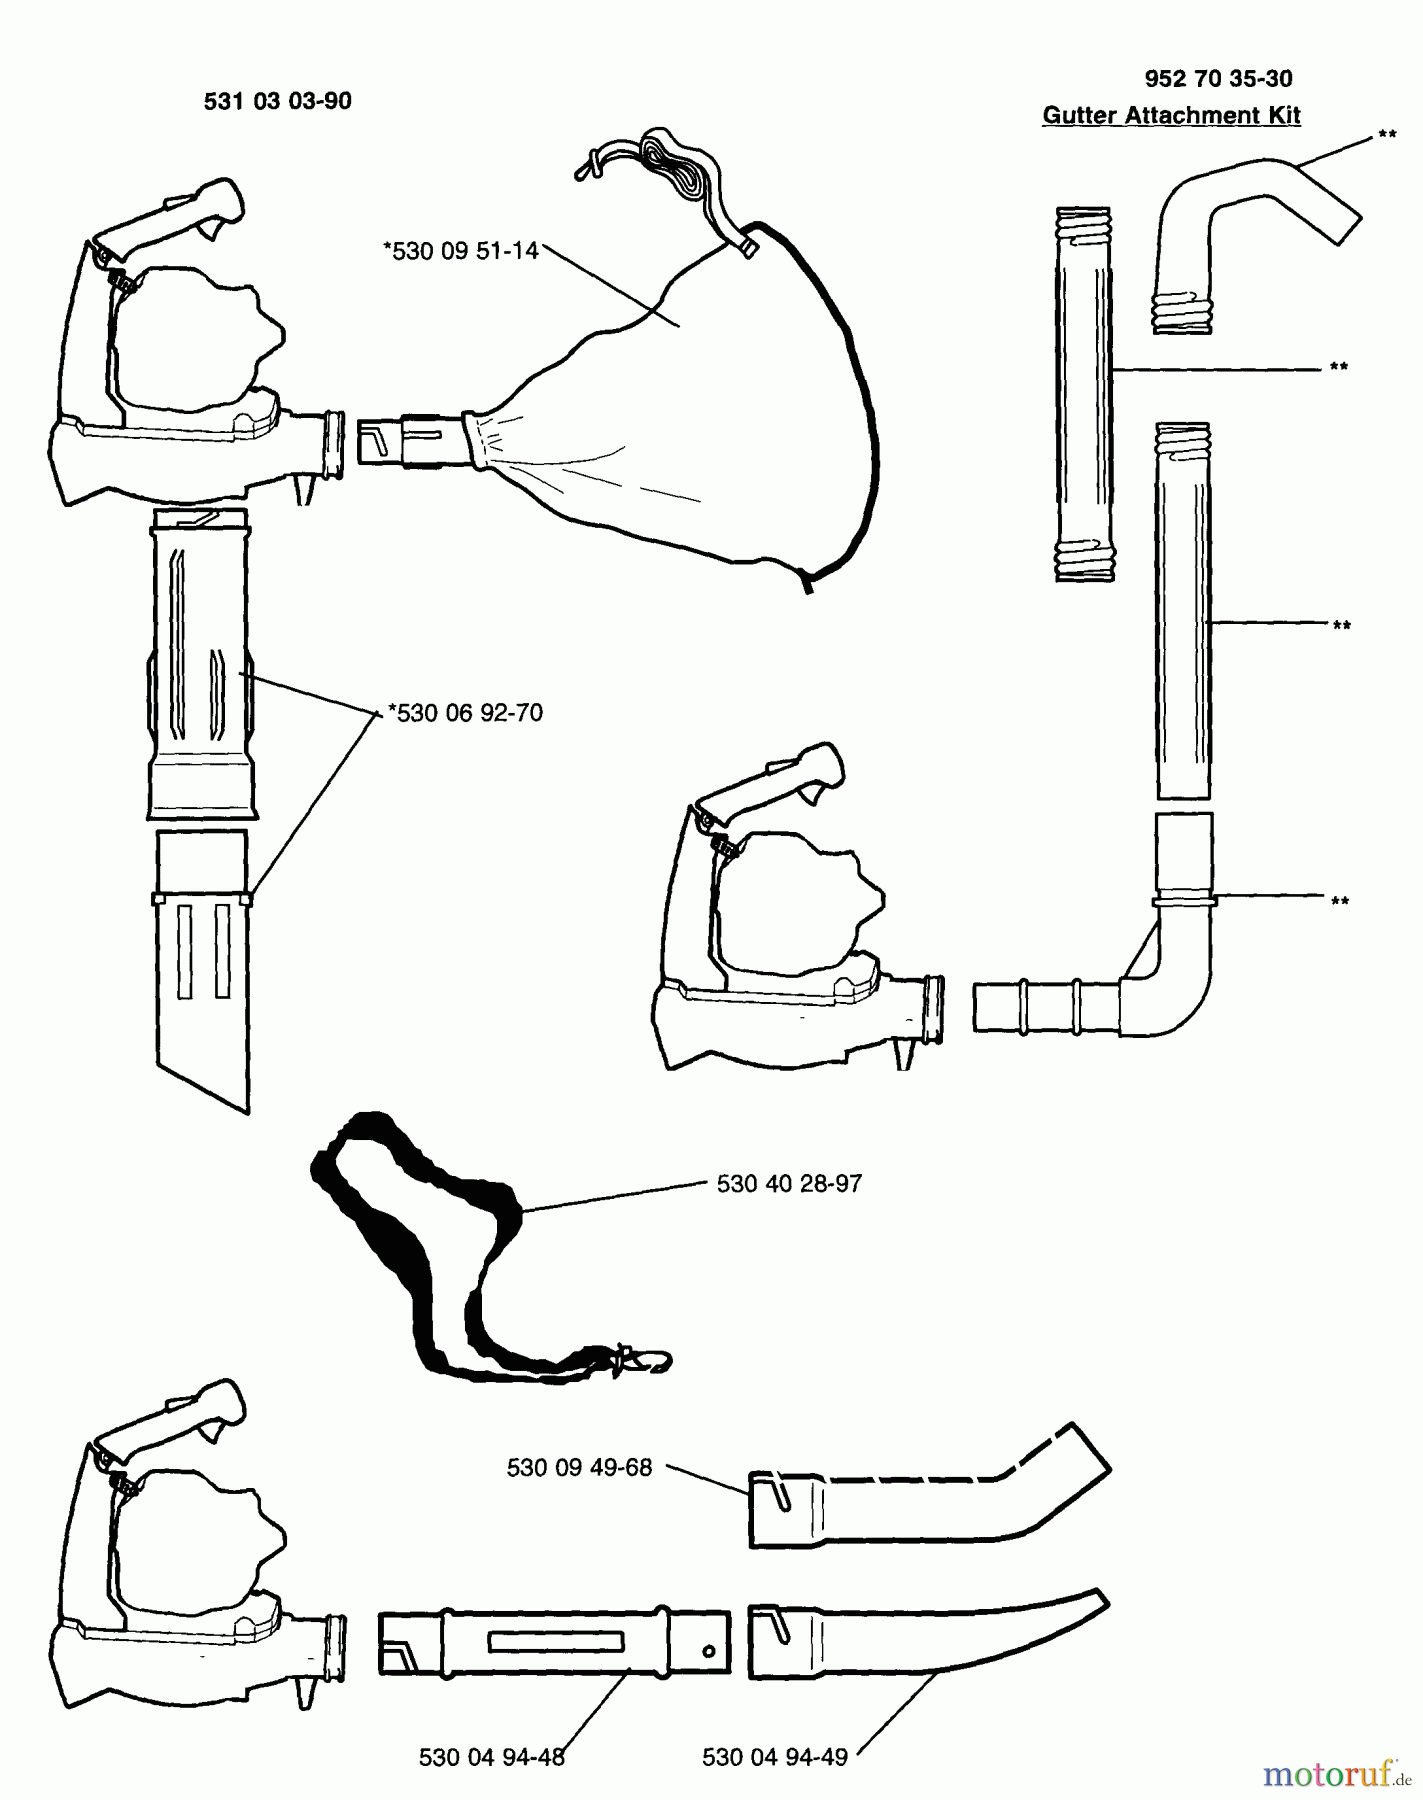  Husqvarna Bläser / Sauger / Häcksler / Mulchgeräte 225 HBV - Husqvarna Handheld Blower Vacuum (1996-09 to 1997-01) Vacuum And Gutter Attachment Kits